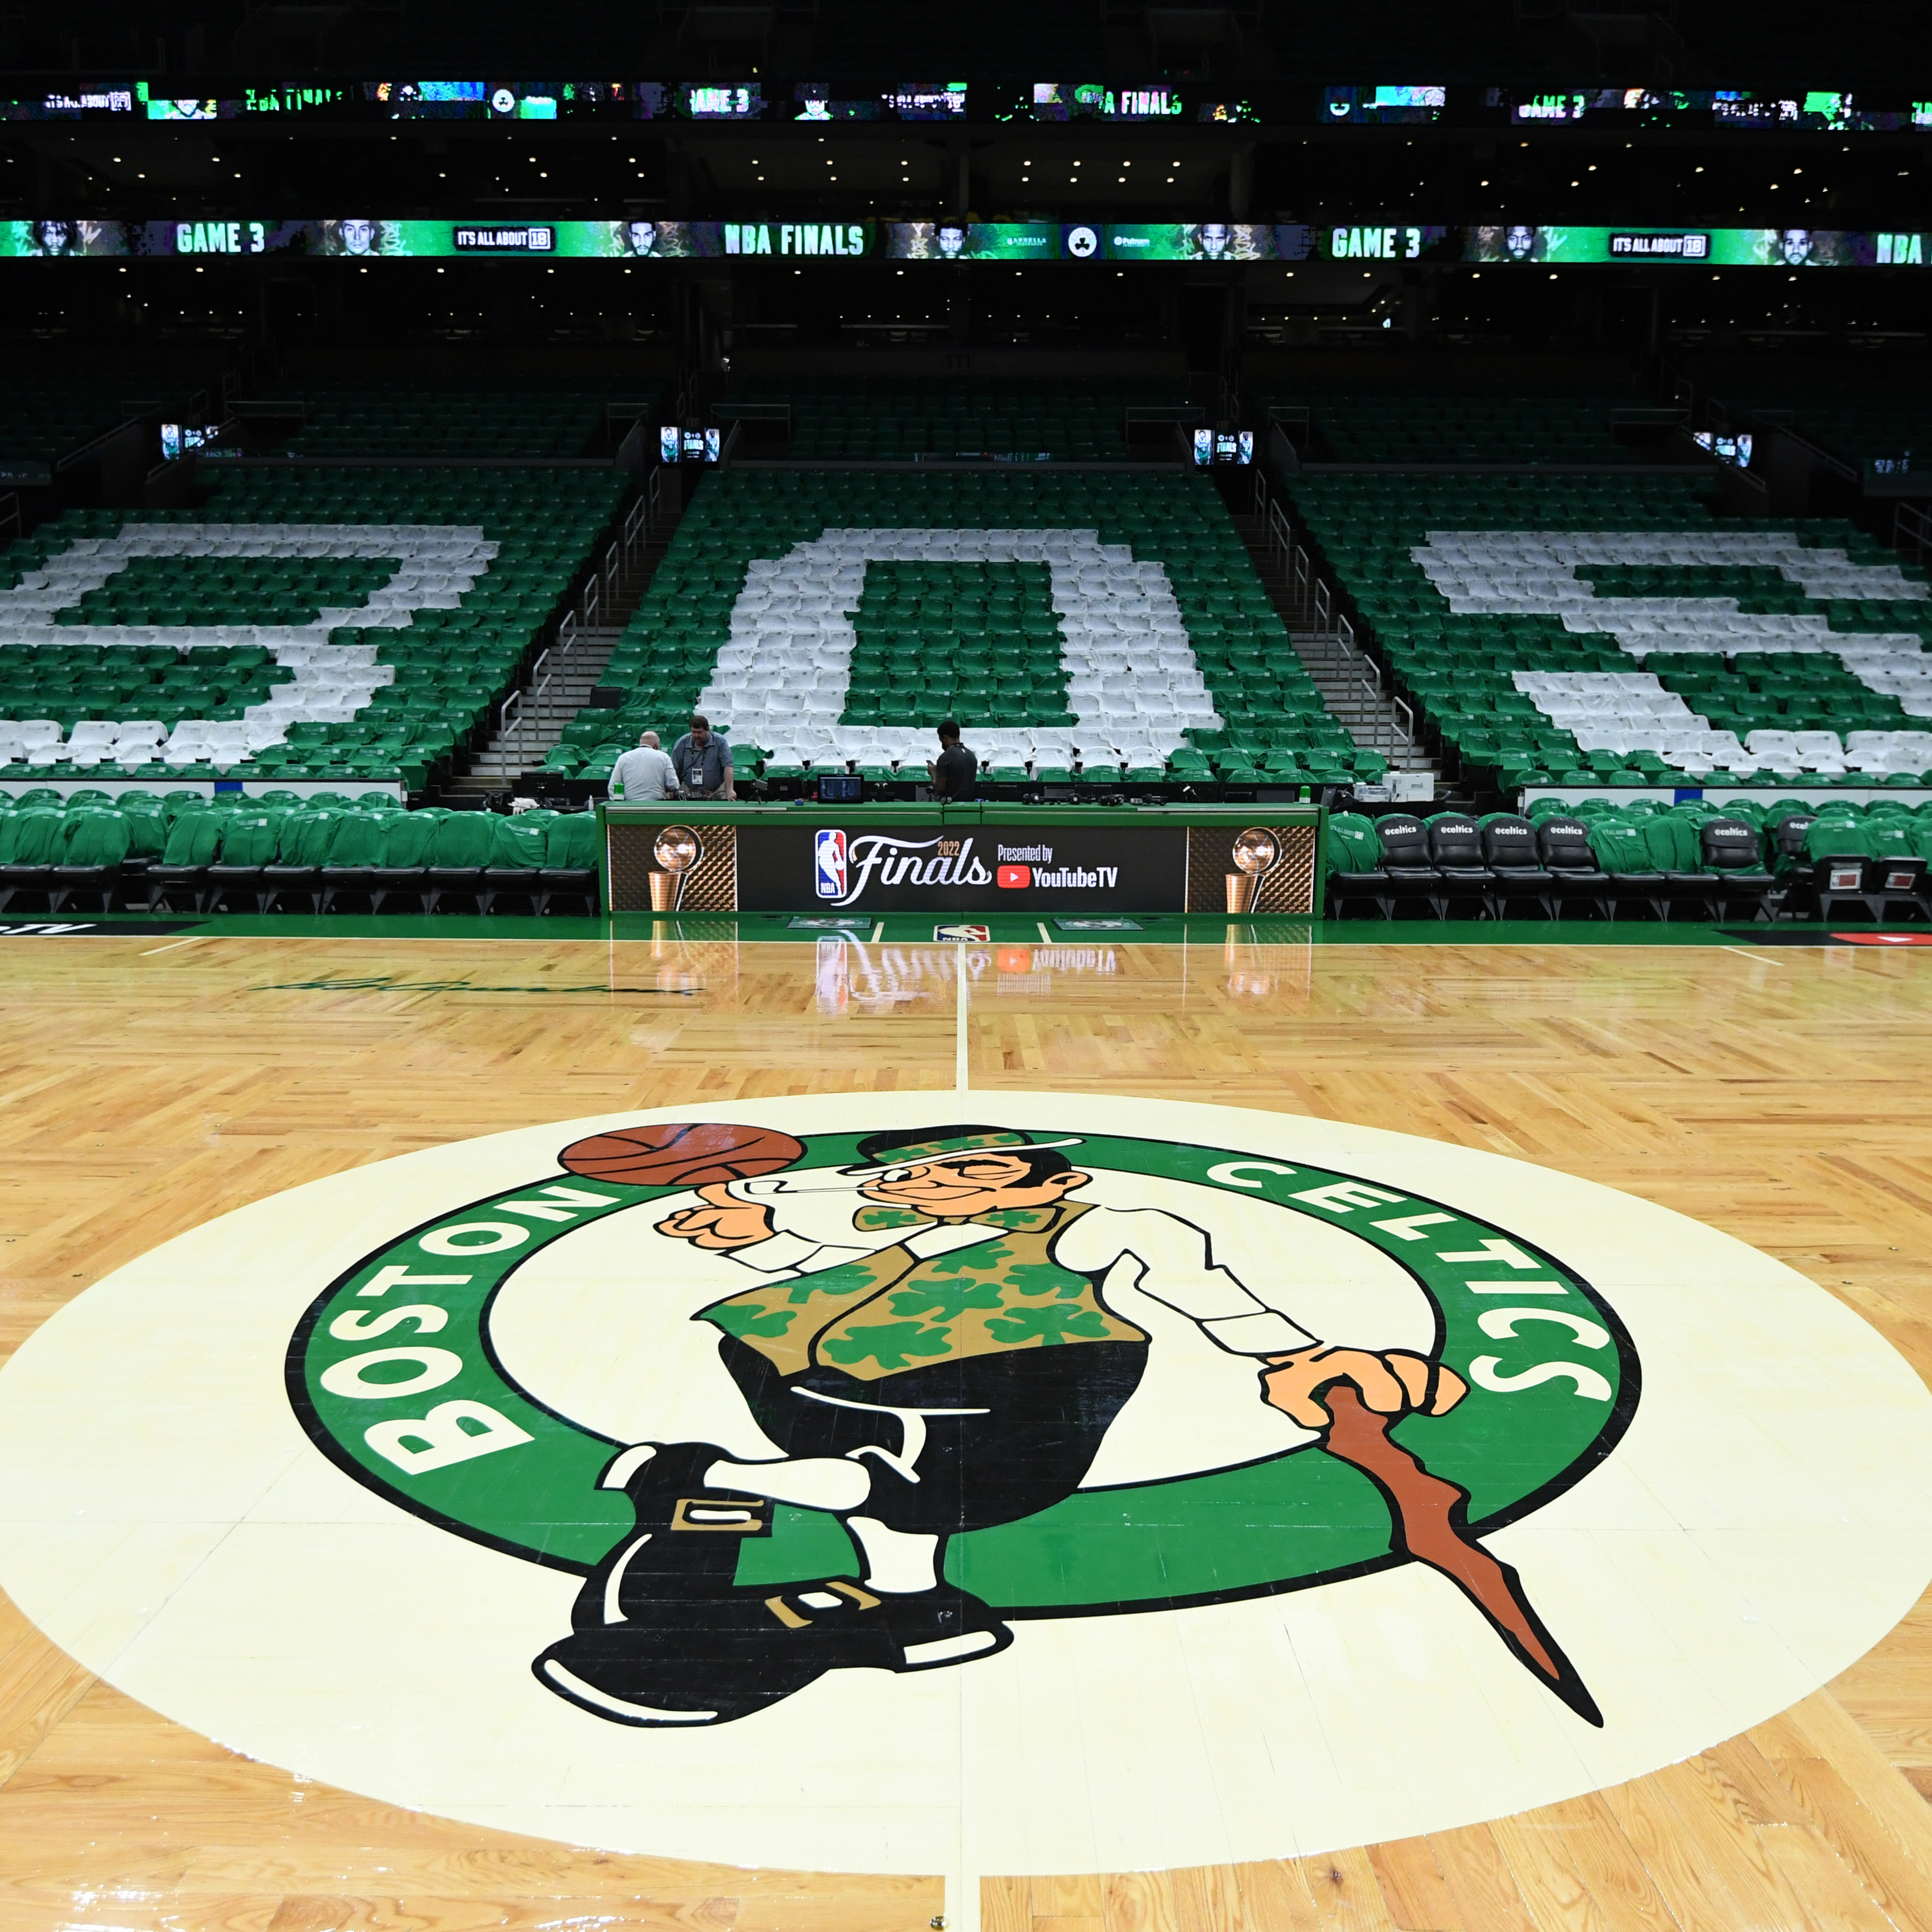 Celtics' TD Garden Basket Revealed to Be Too High After Warriors' Complaints